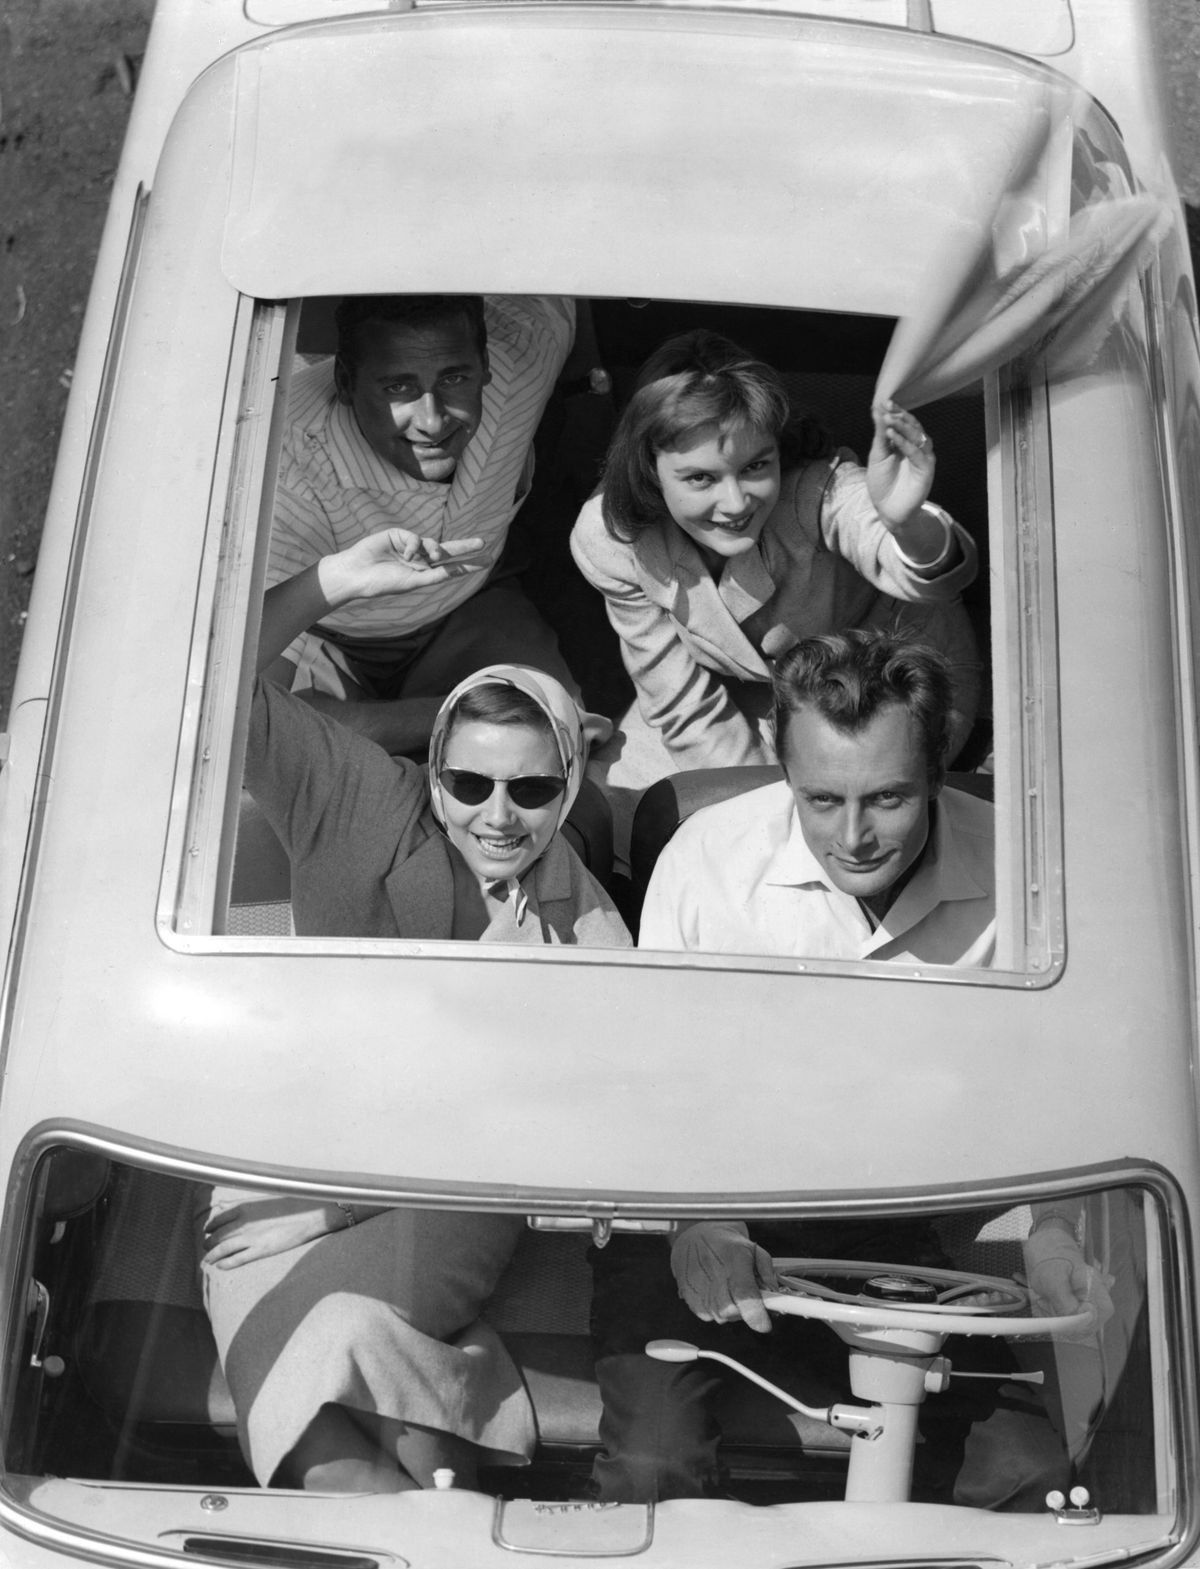 anak-anak muda melambai dari bahagian atas kereta terbuka pada tahun 1950-an